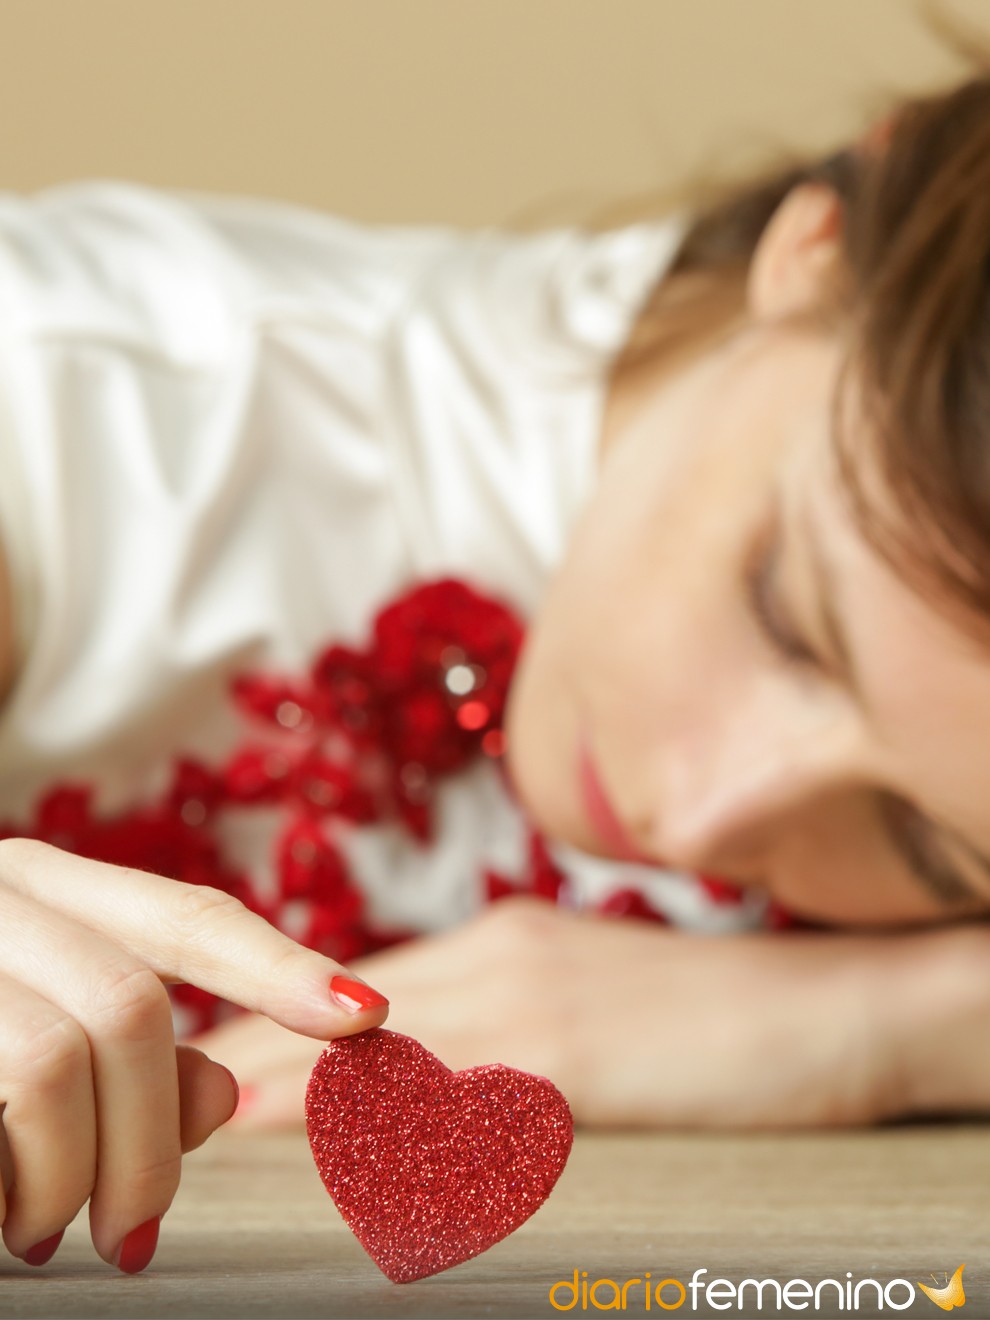 San Valentín: tips para entender más sobre el amor